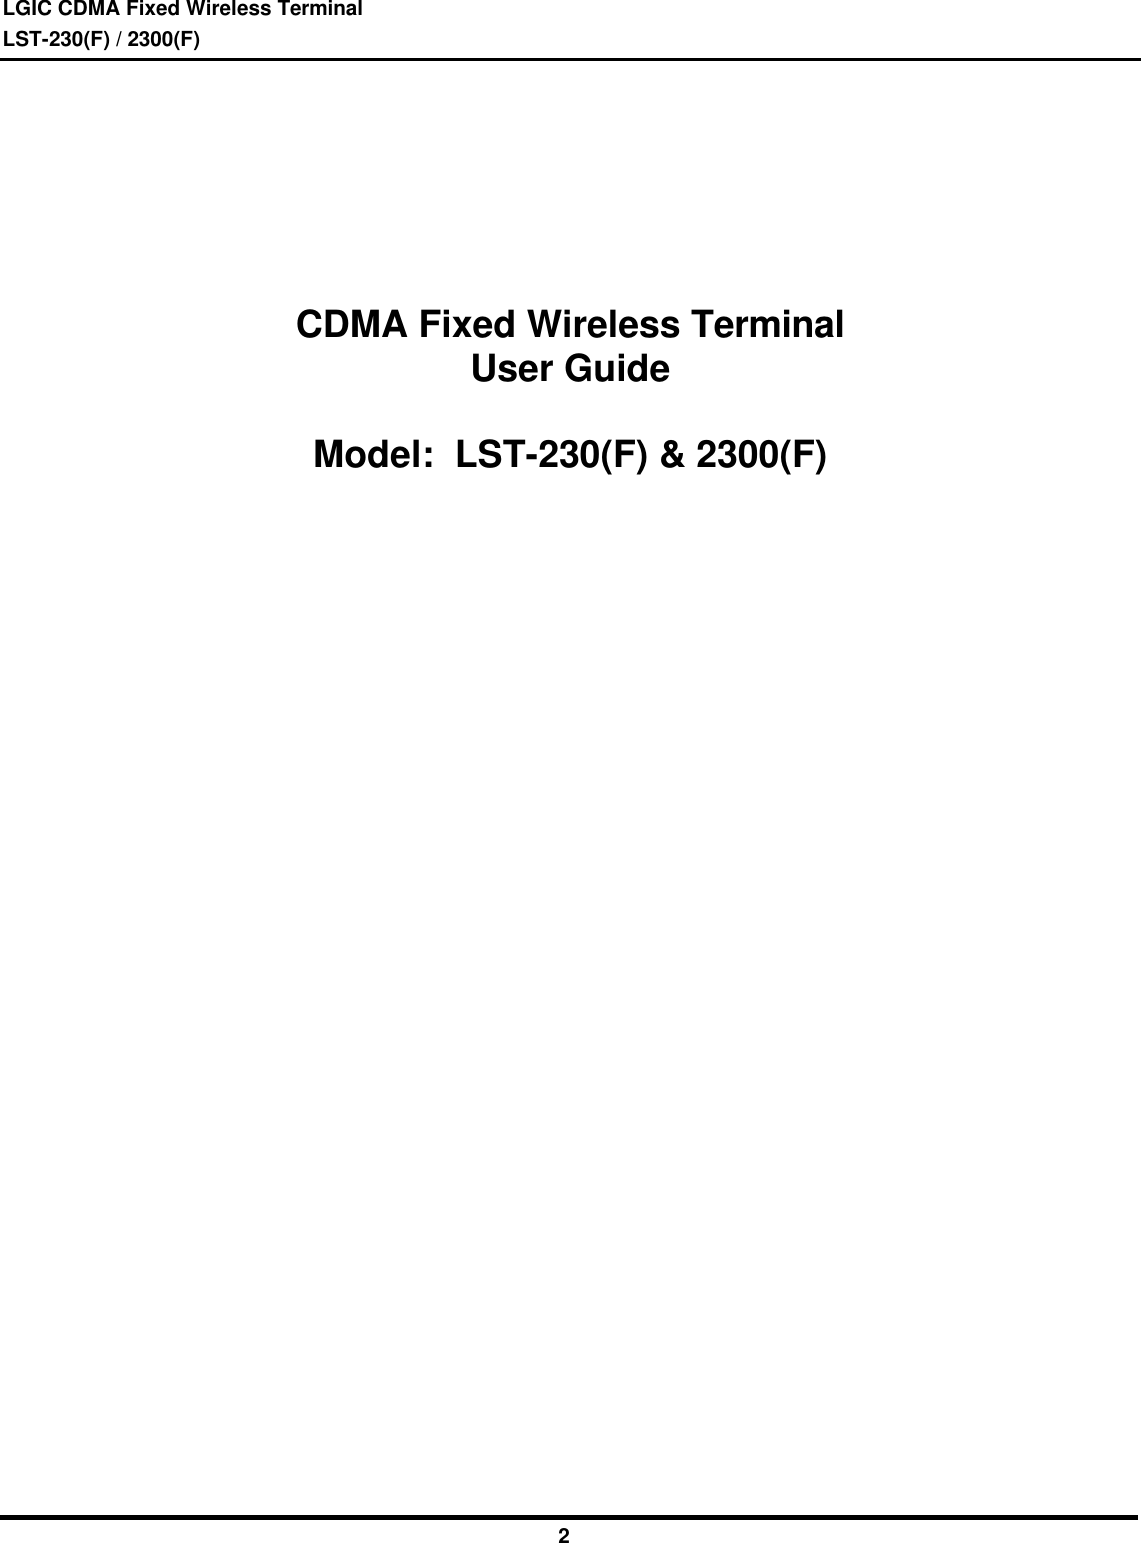 LGIC CDMA Fixed Wireless TerminalLST-230(F) / 2300(F)2CDMA Fixed Wireless TerminalUser GuideModel:  LST-230(F) &amp; 2300(F)